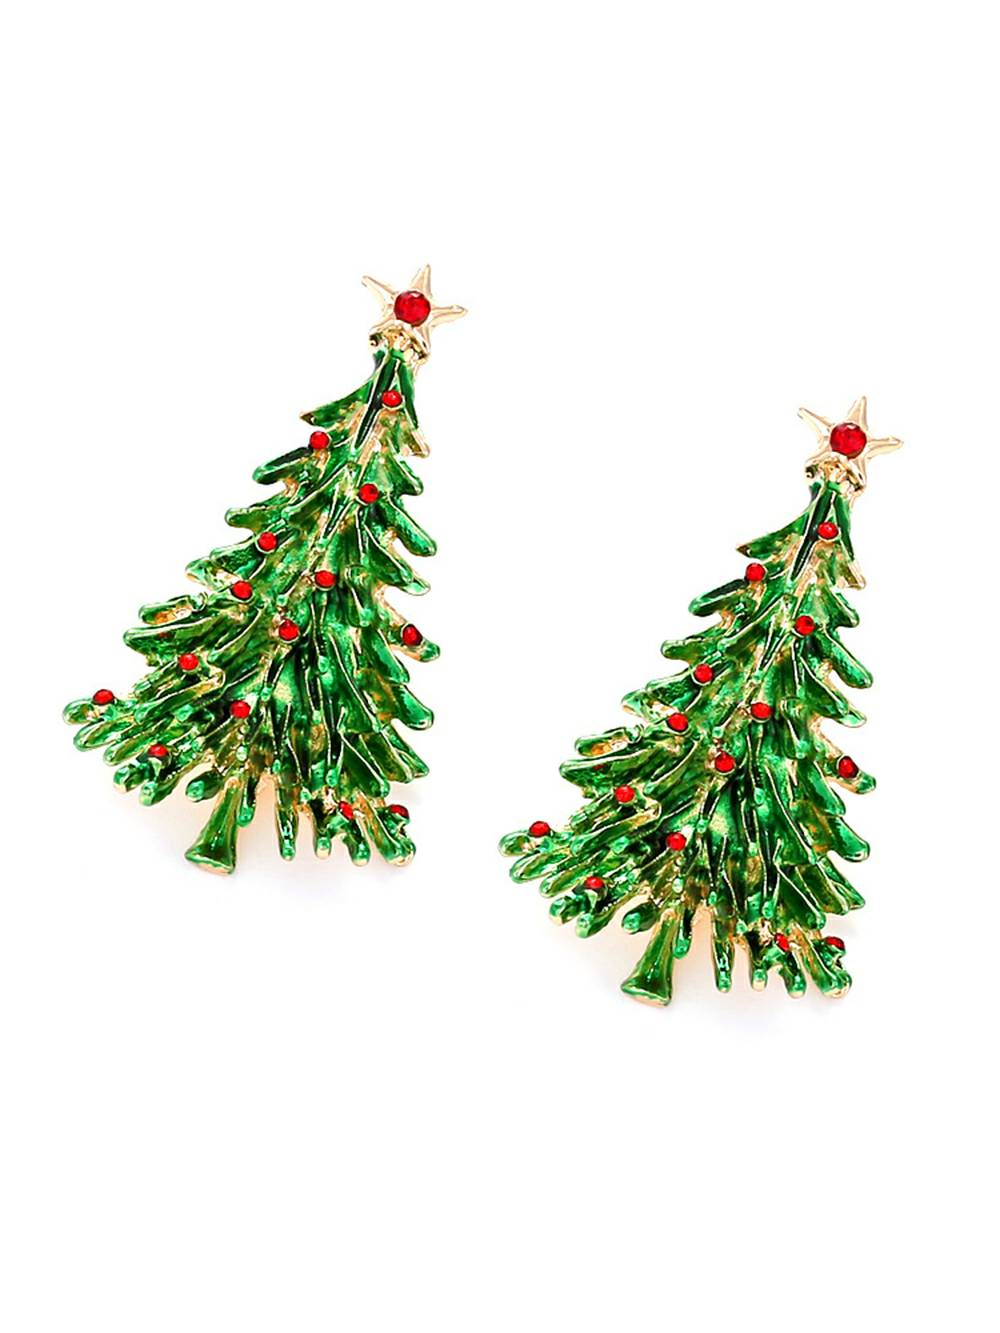 Glänzende Weihnachtsbaum-Stern-Ohrringe